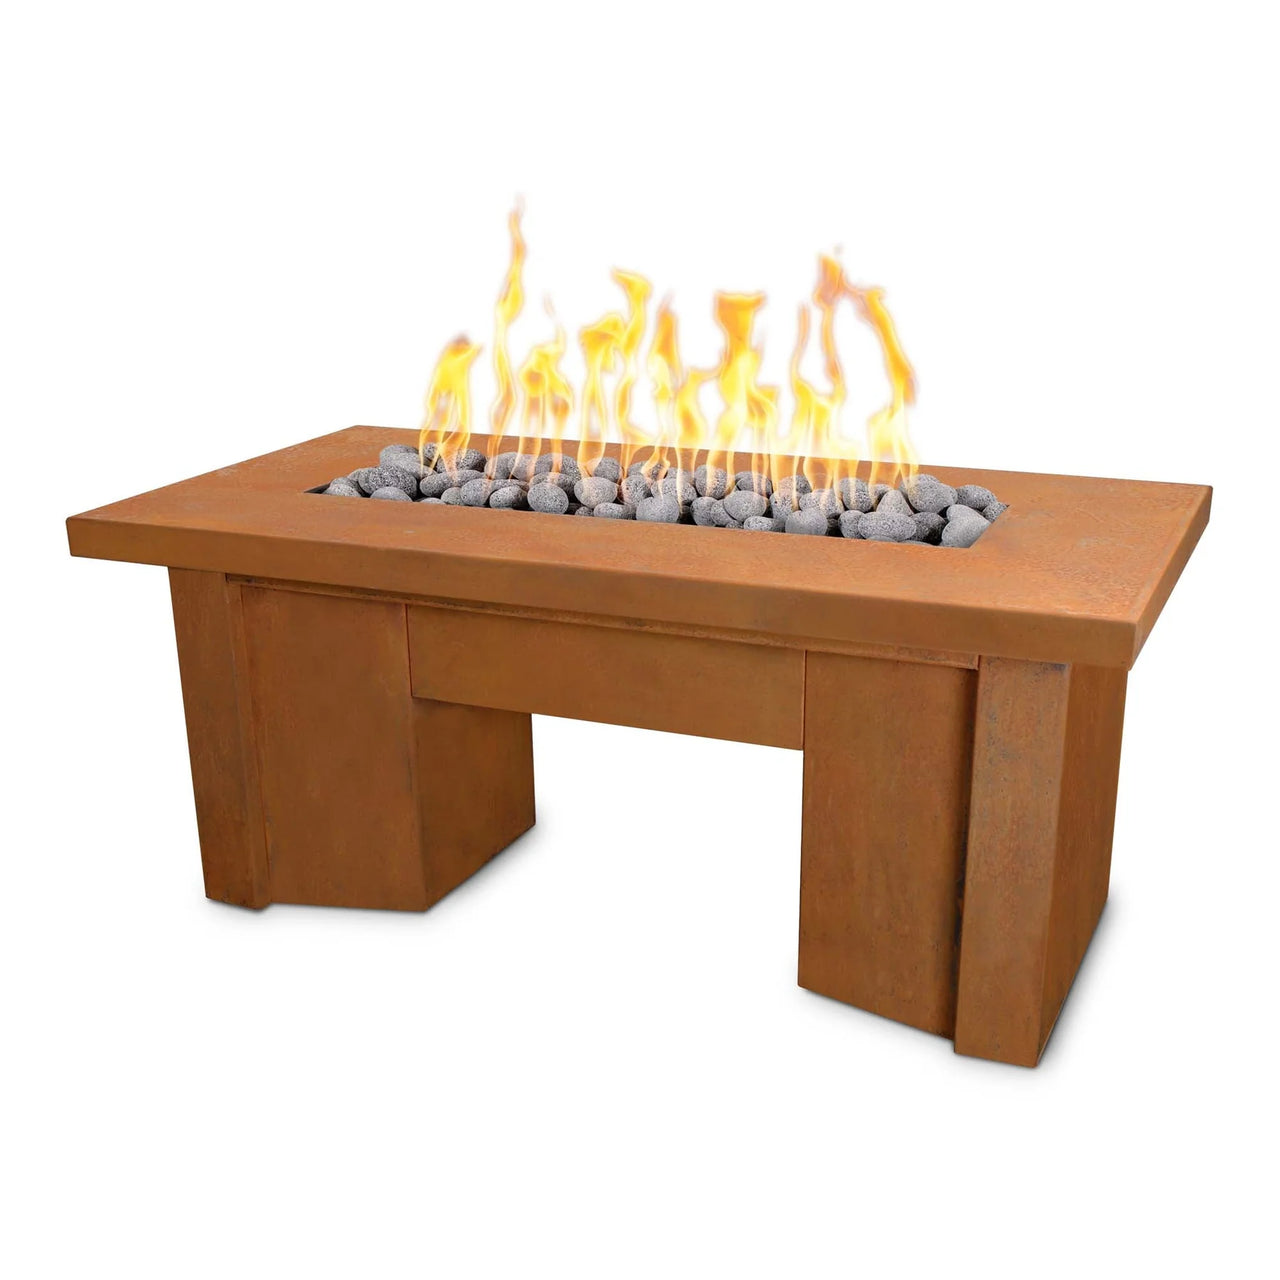 The Outdoor Plus 48" Rectangular Alameda Corten Steel Fire Table